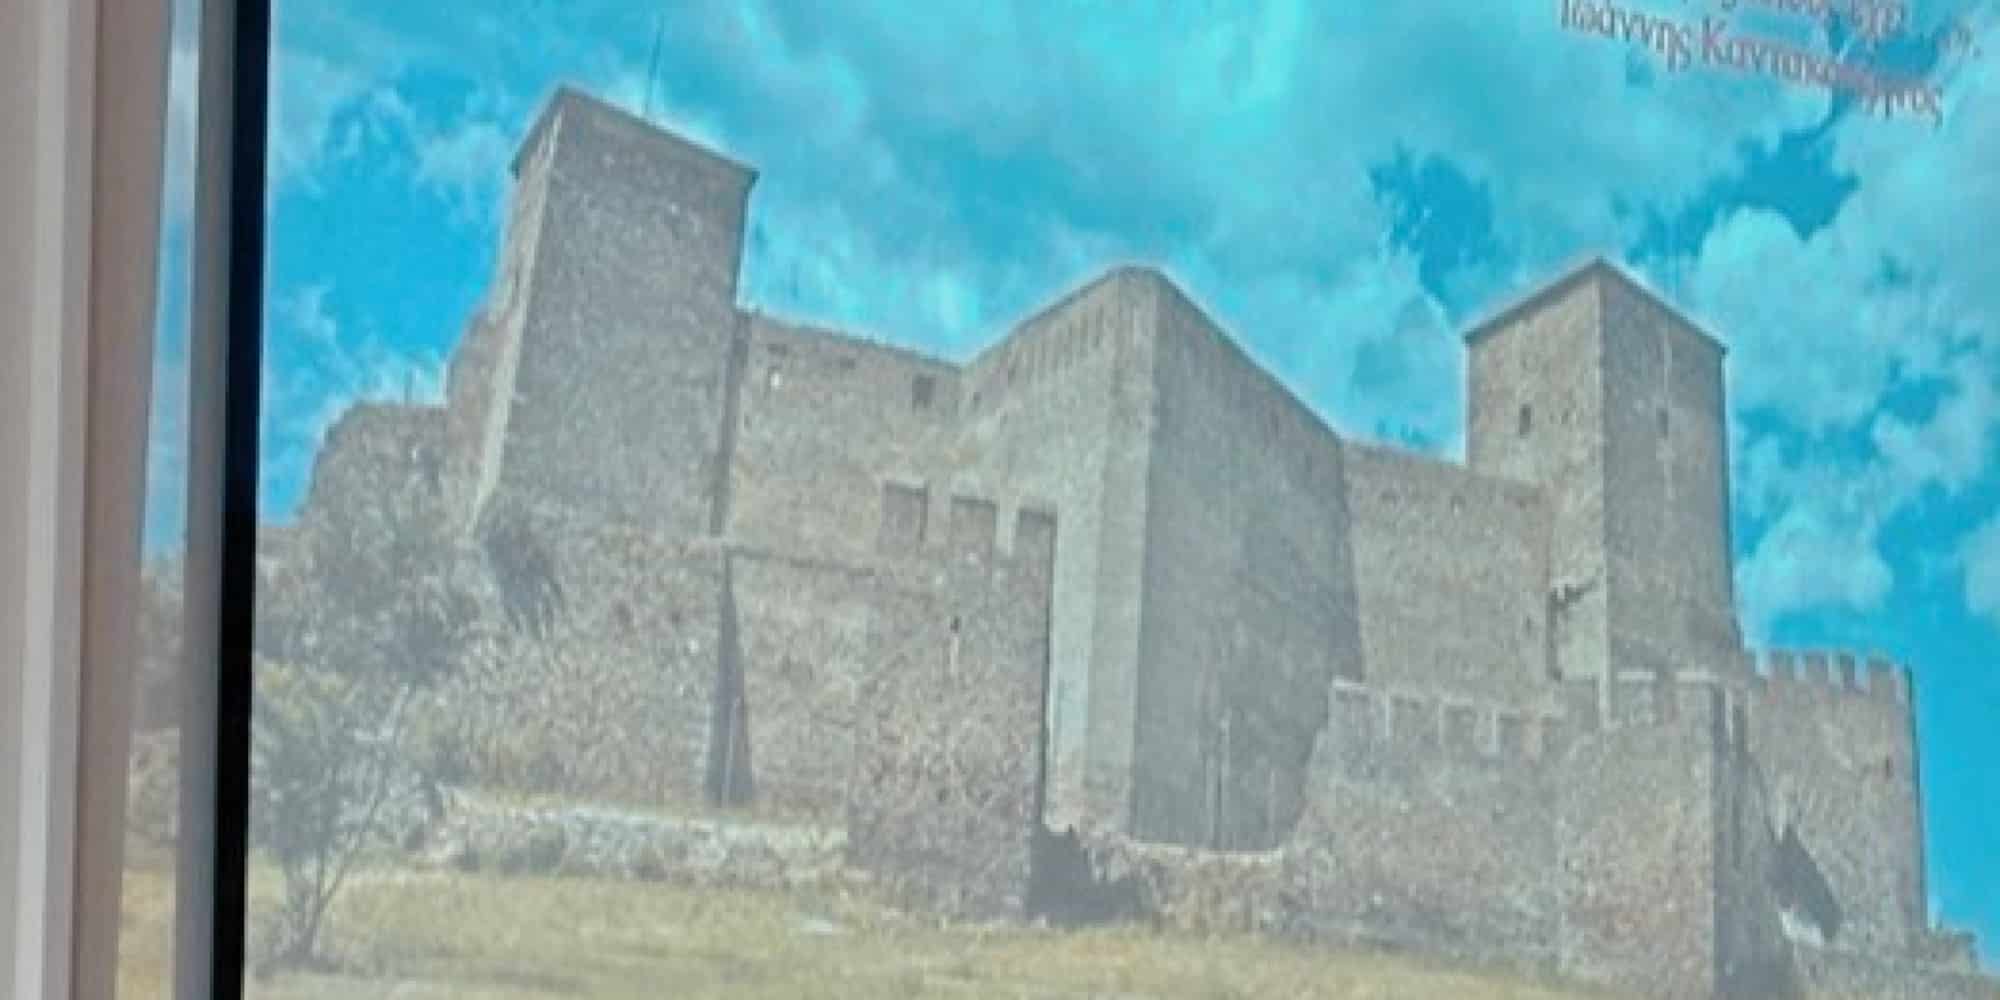 Άγνωστος βυζαντινός ναός βρέθηκε στην Ακρόπολη Θεσσαλονίκης